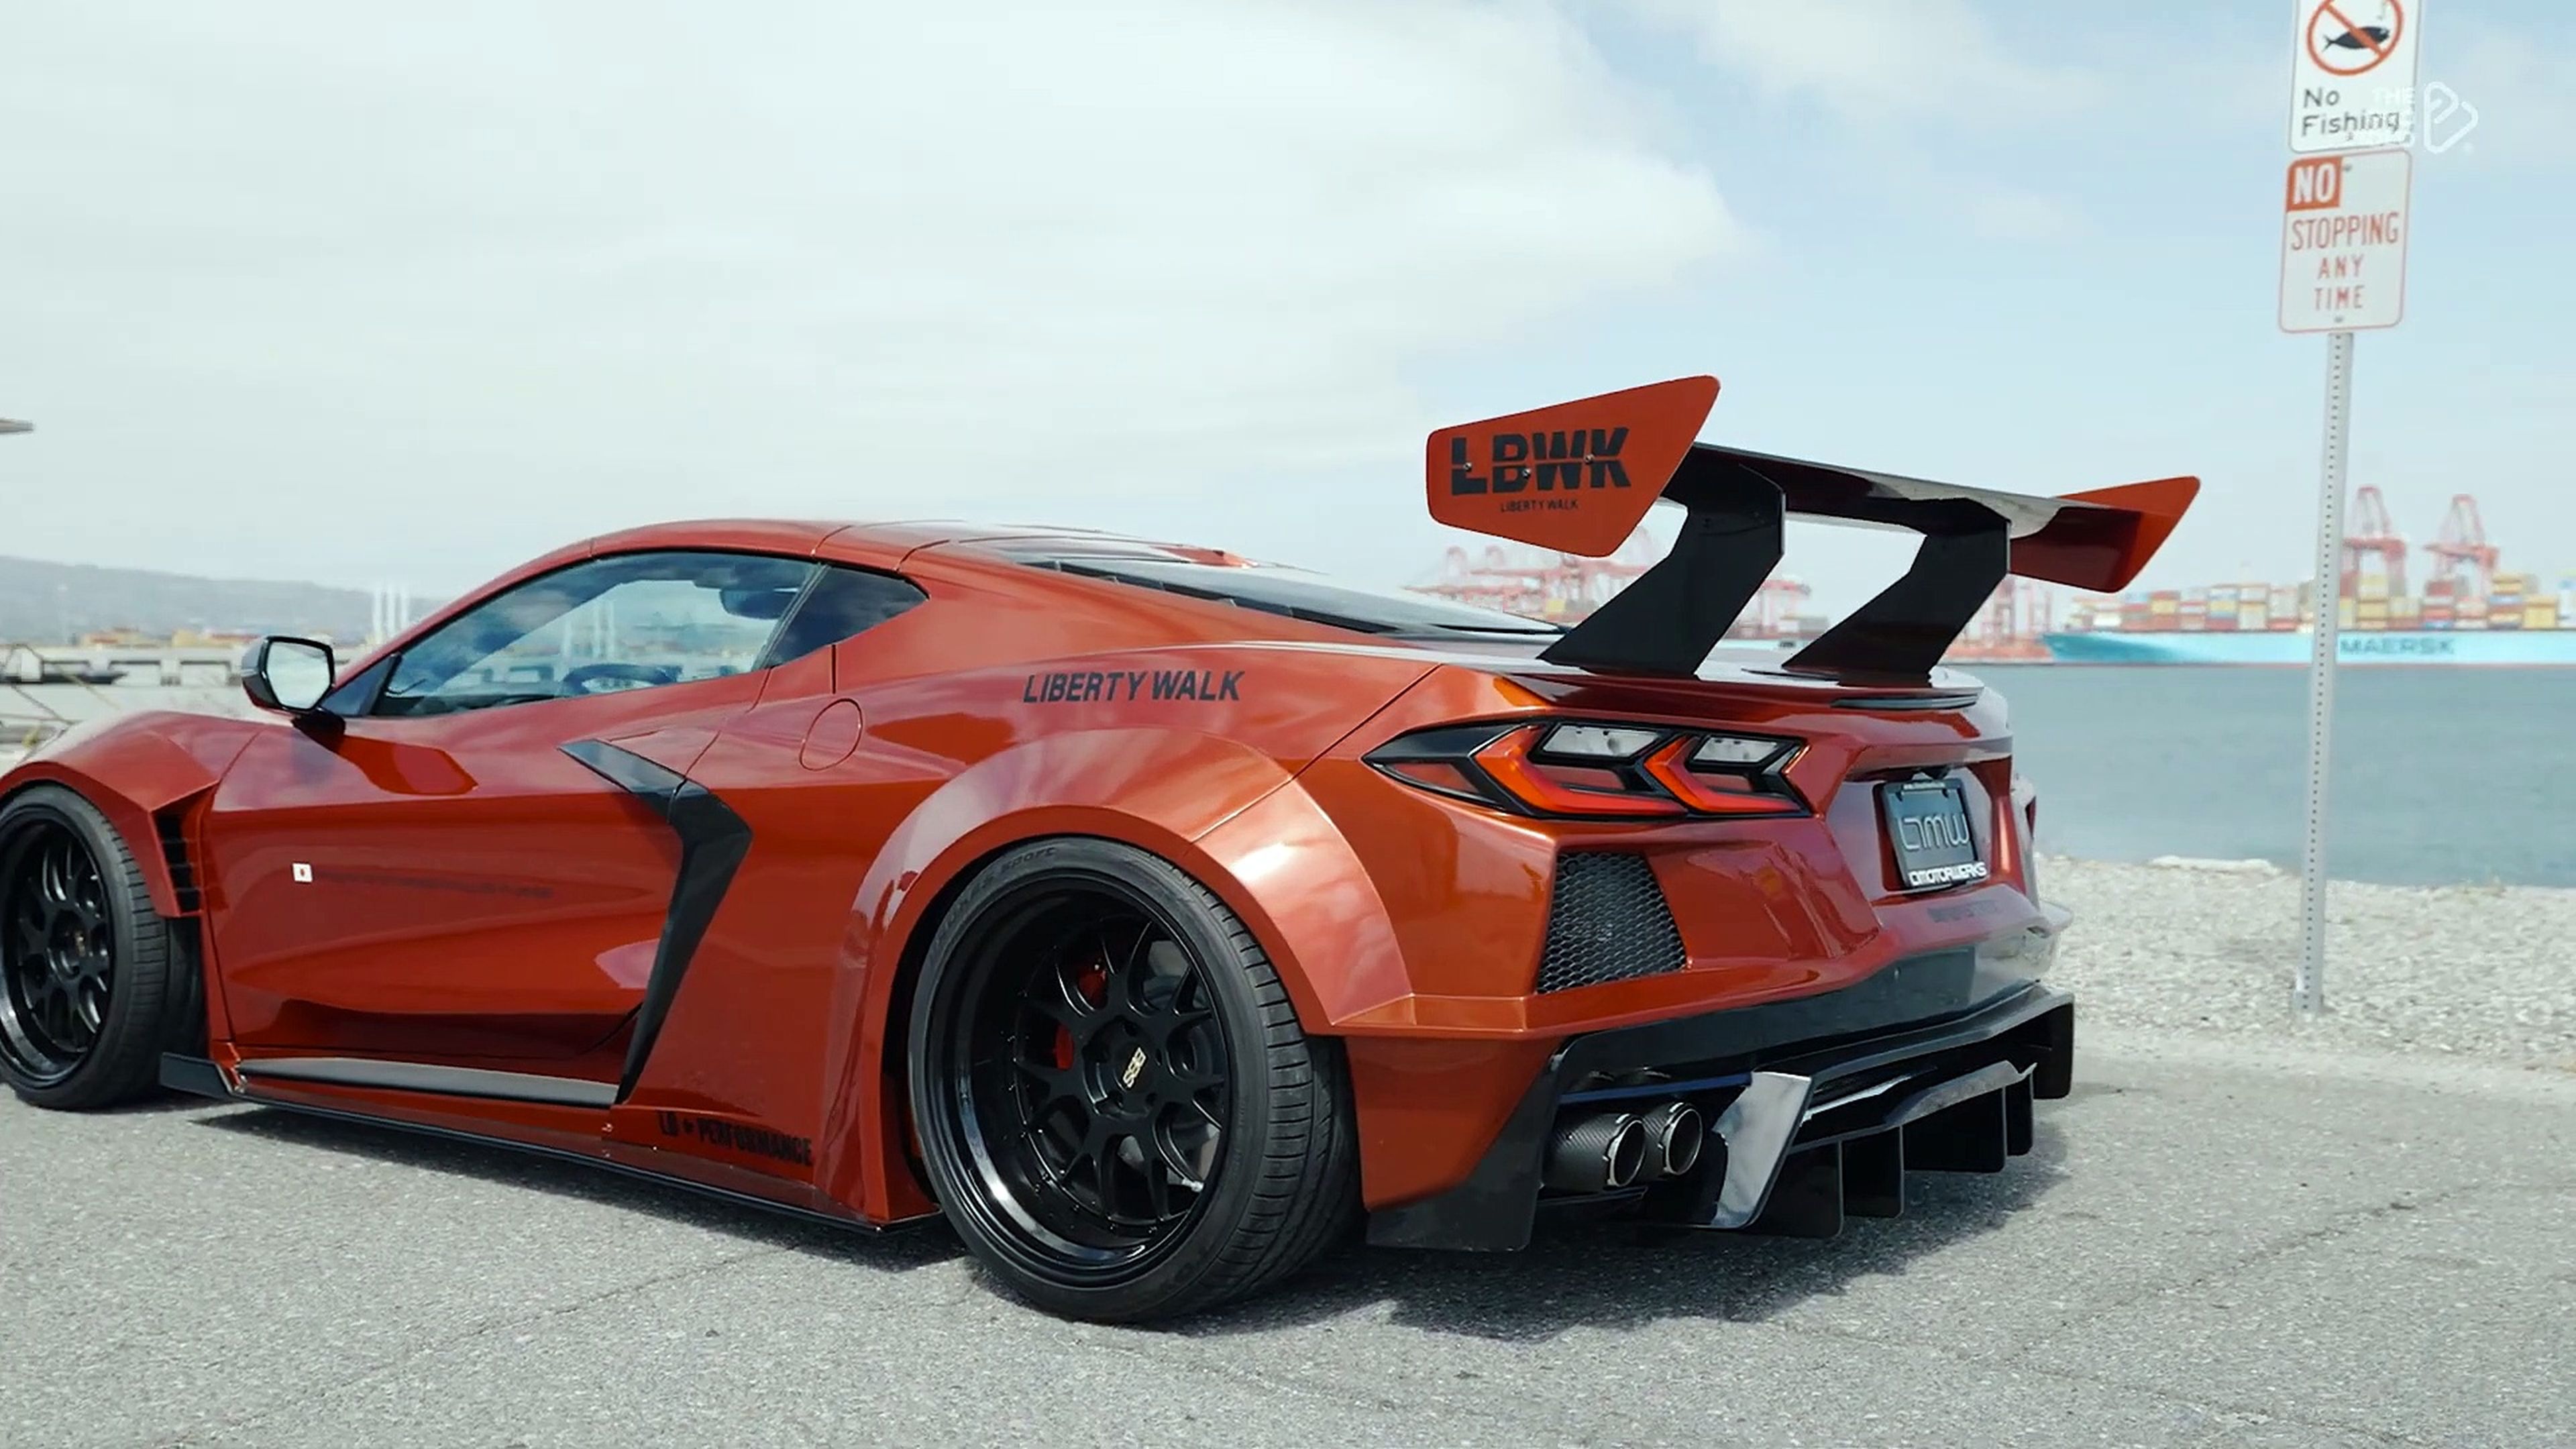 VÍDEO: Puntúa este Corvette C8, ¿demasiado tuning o le queda bien? ¿Qué opinas?